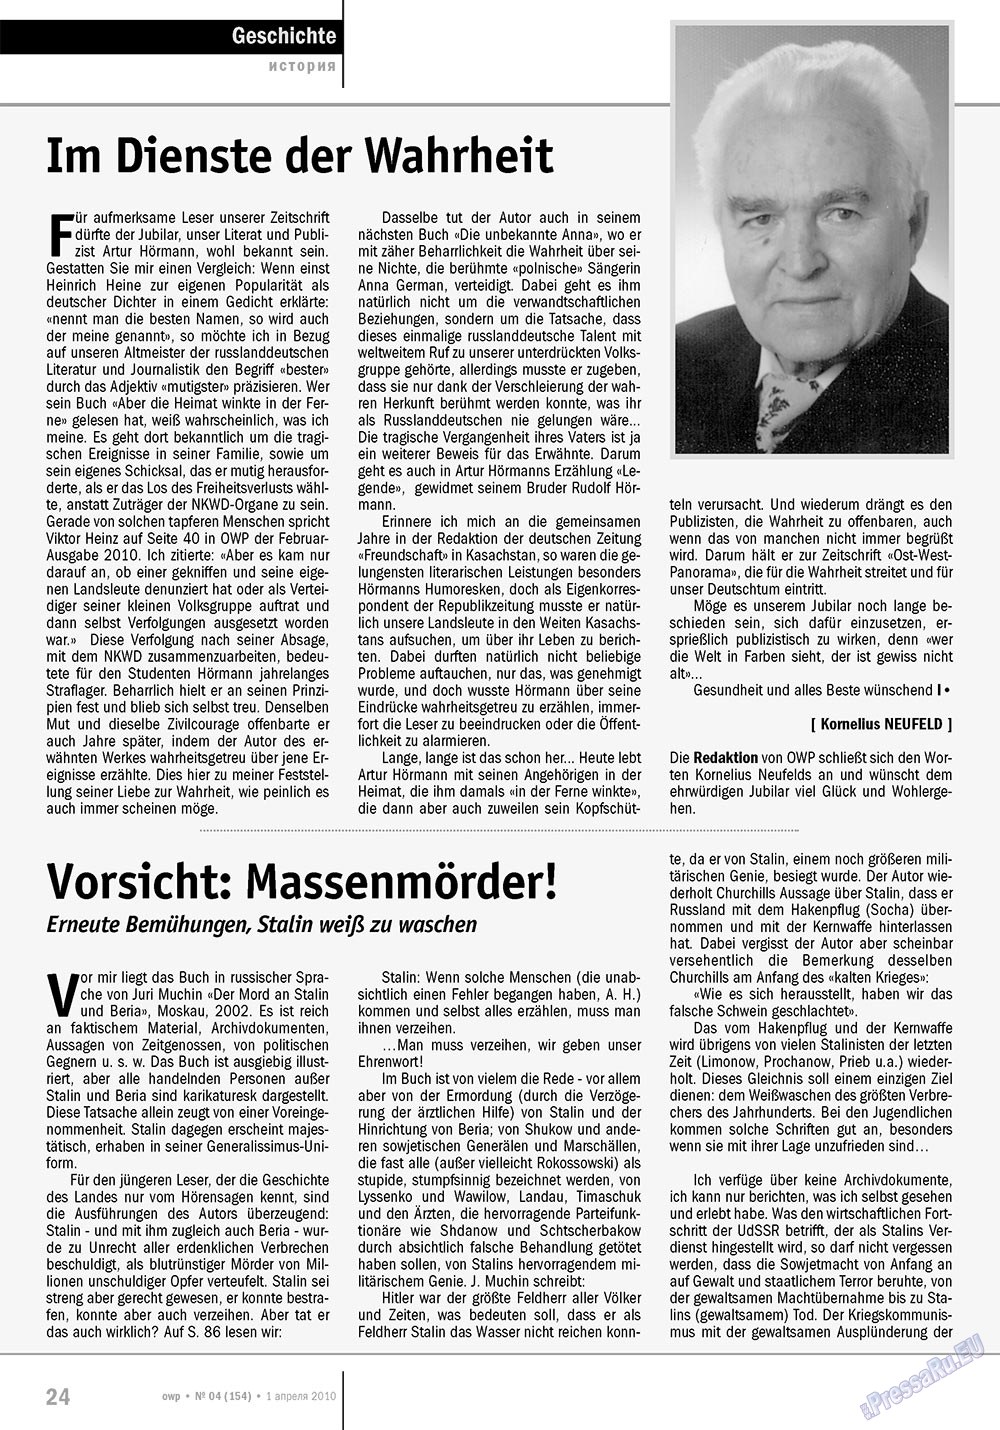 Ost-West Panorama (Zeitschrift). 2010 Jahr, Ausgabe 4, Seite 24